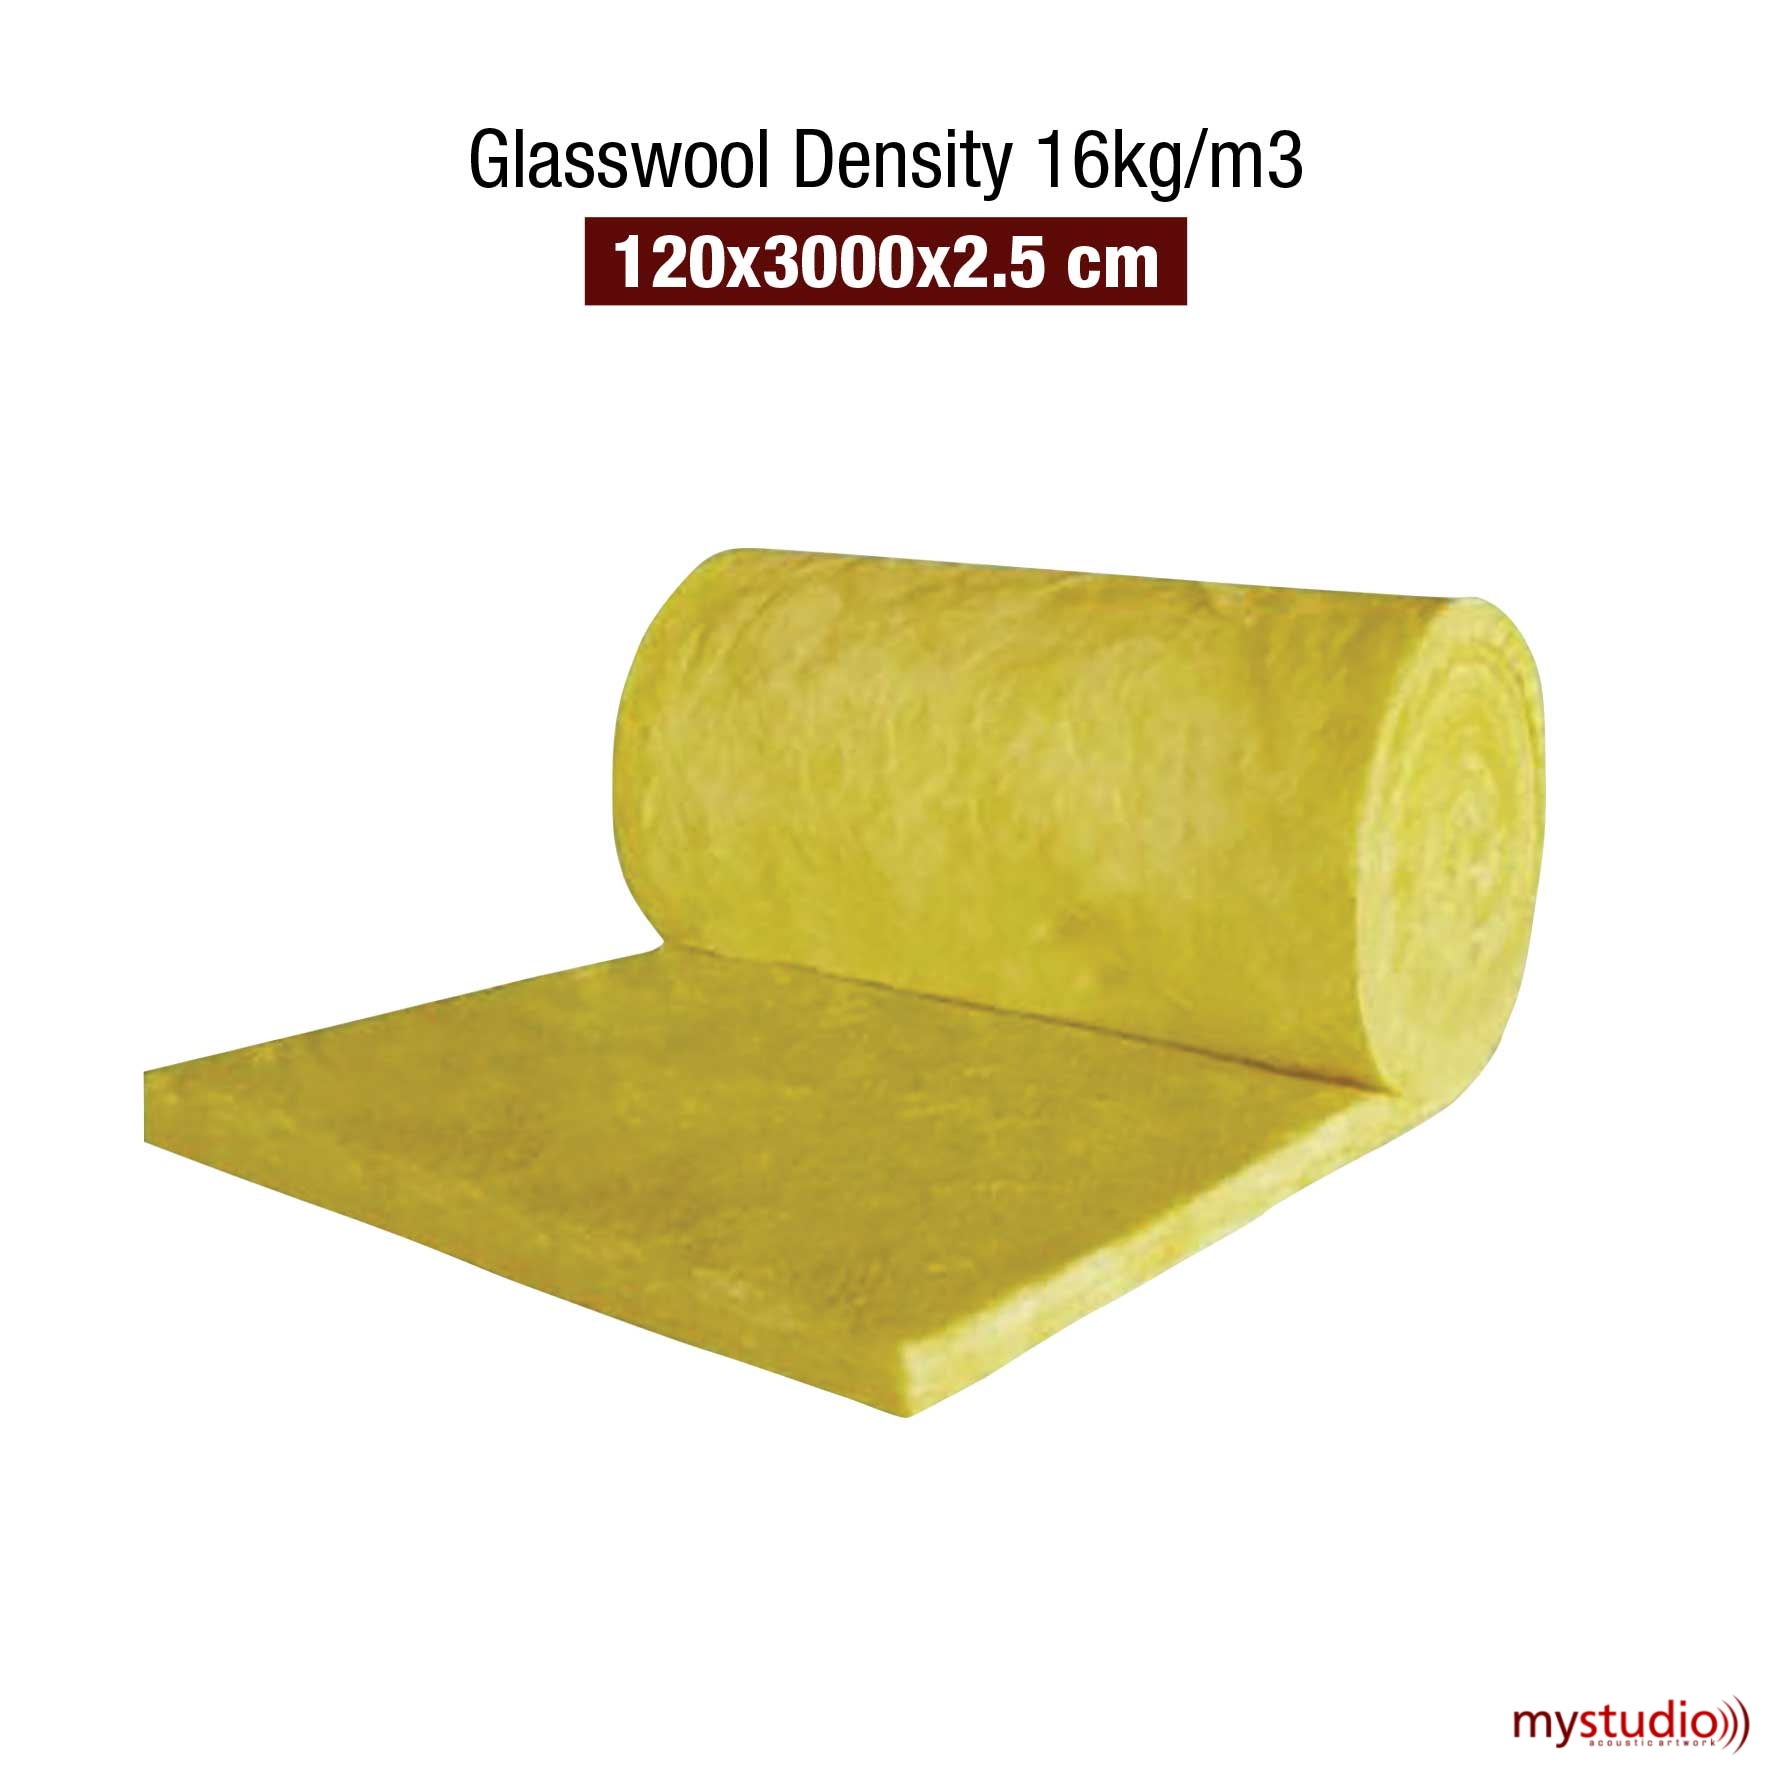 Glasswool Density 16kg/m3 - Produk Mystudio